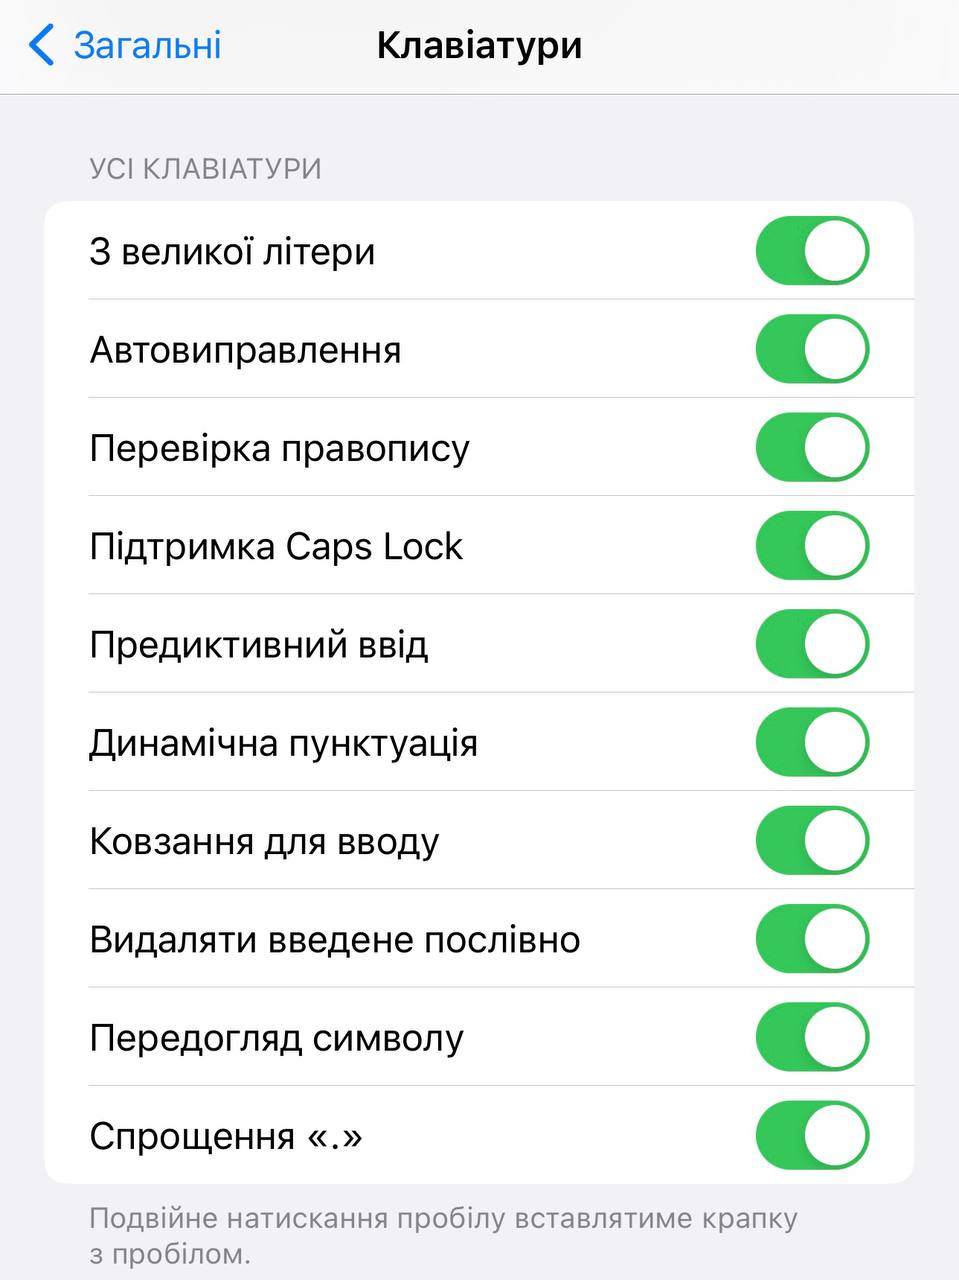 Apple étendra les fonctions du clavier ukrainien photo 1